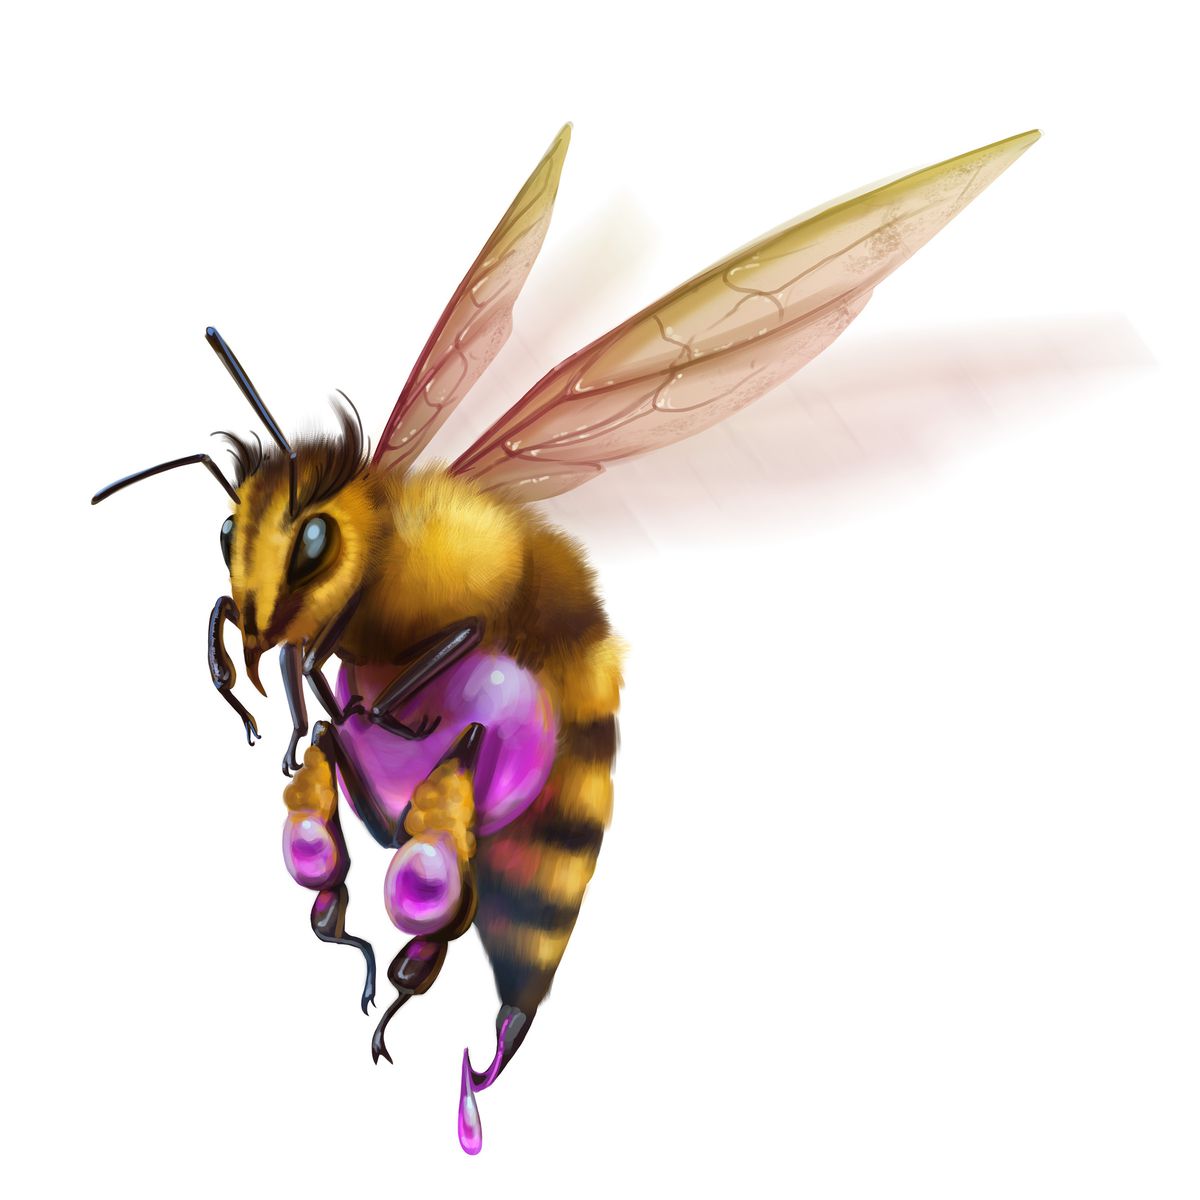 Bacaklarının üstünde ve üstünde mor bir çuval bulunan büyük, tüylü bir arı. Mor ihor iğnesinden düşer.